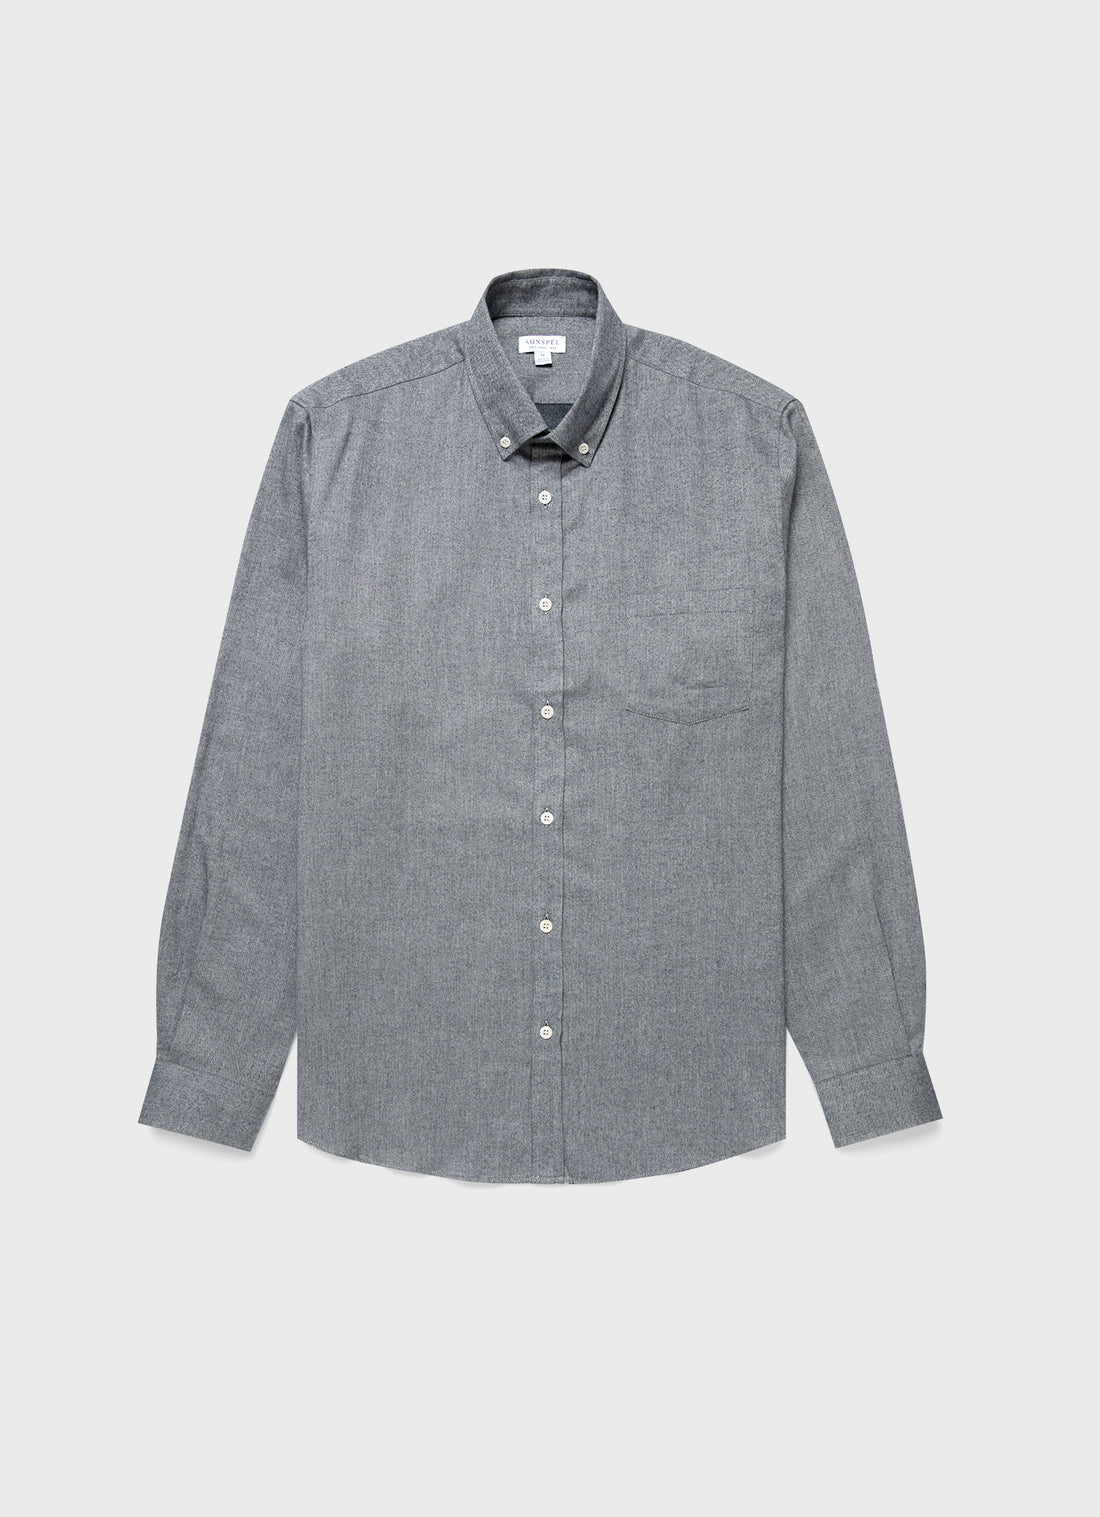 Men's Button Down Flannel Shirt in Mid Grey Melange